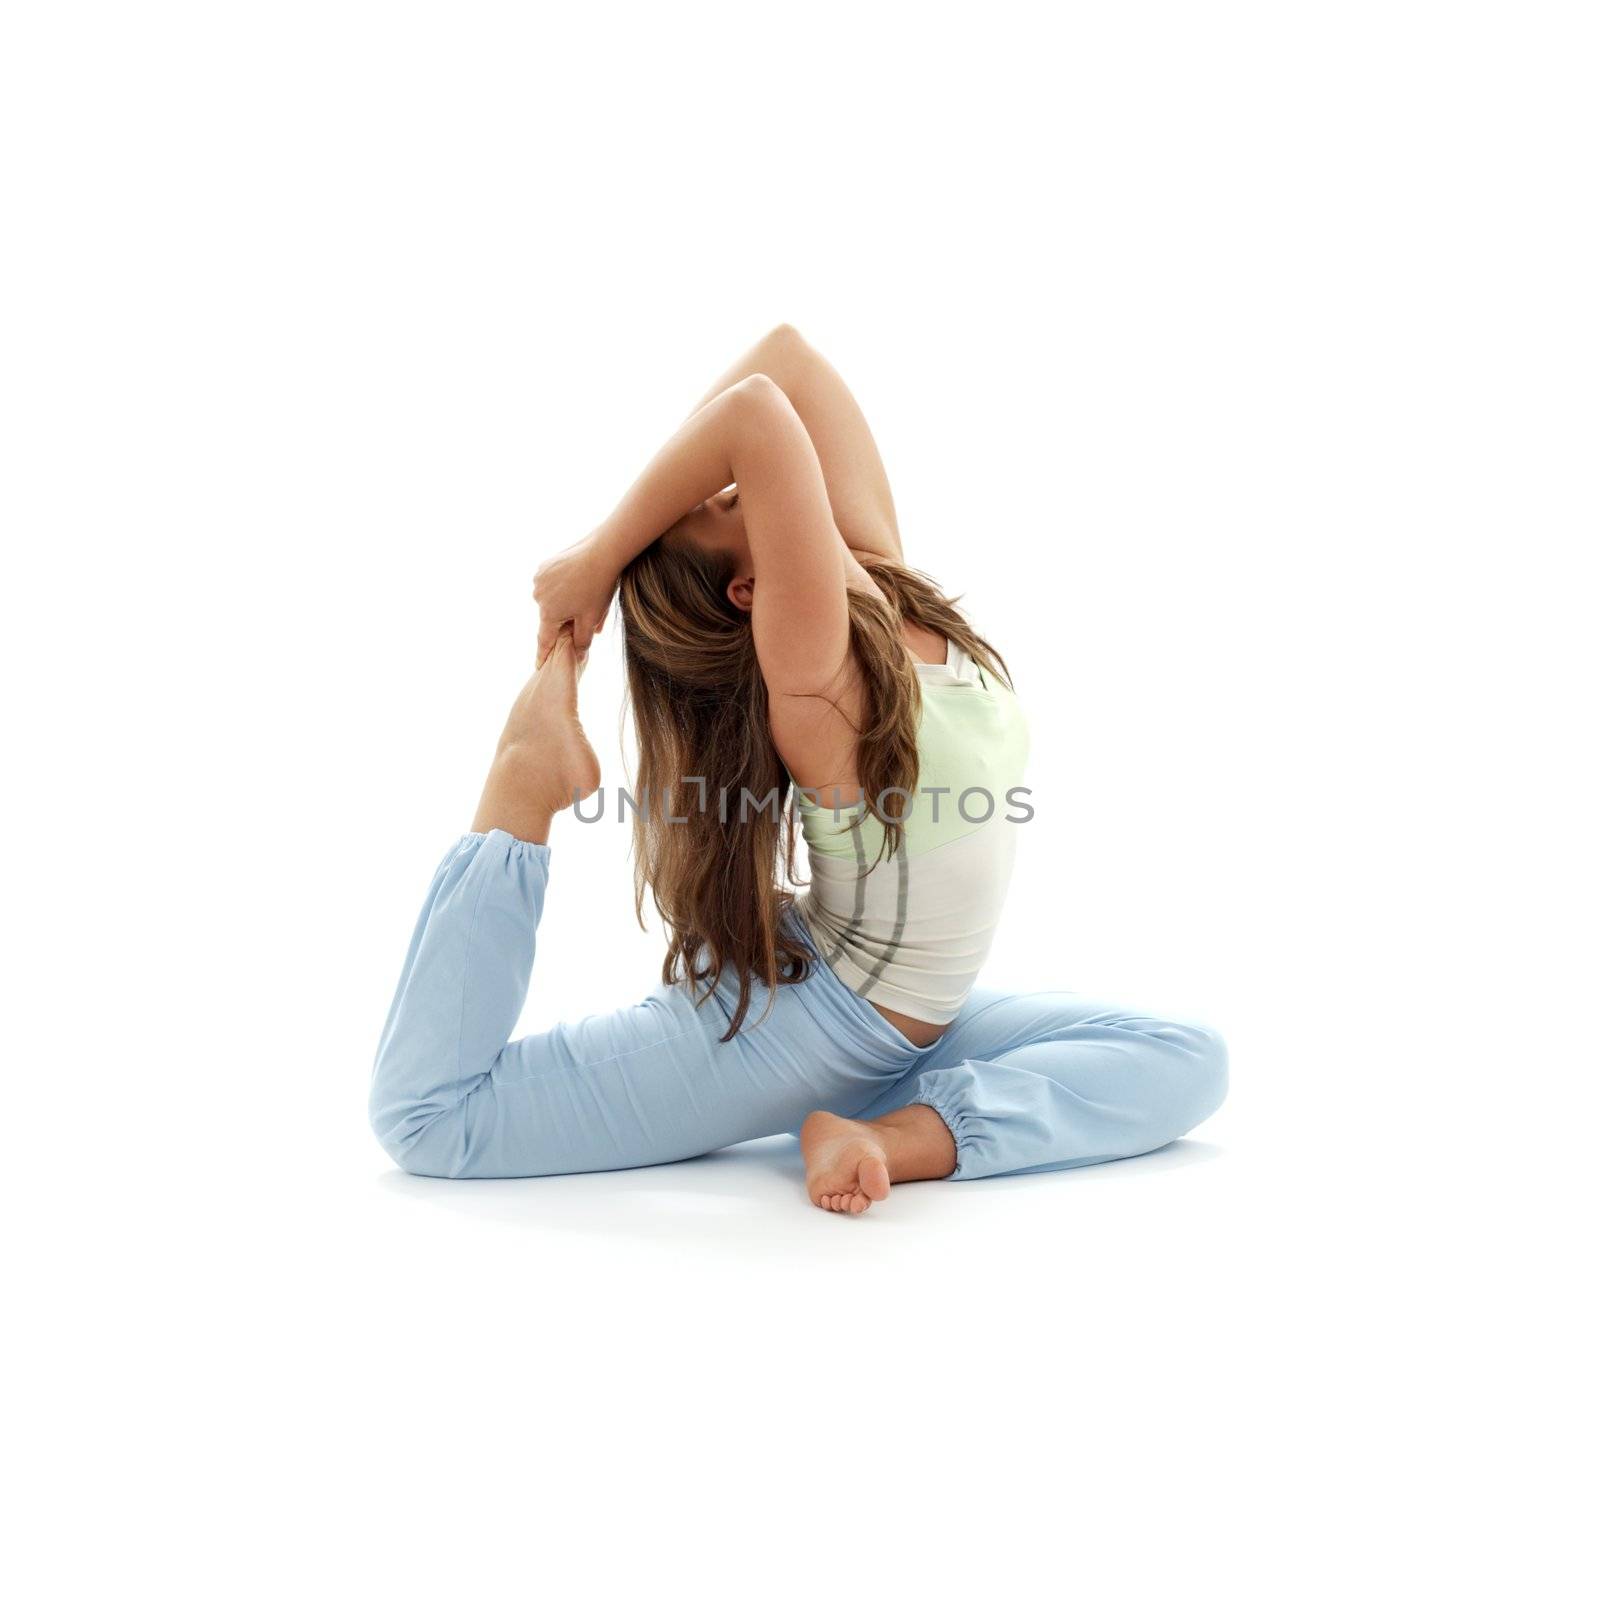 ashtanga yoga #2 by dolgachov